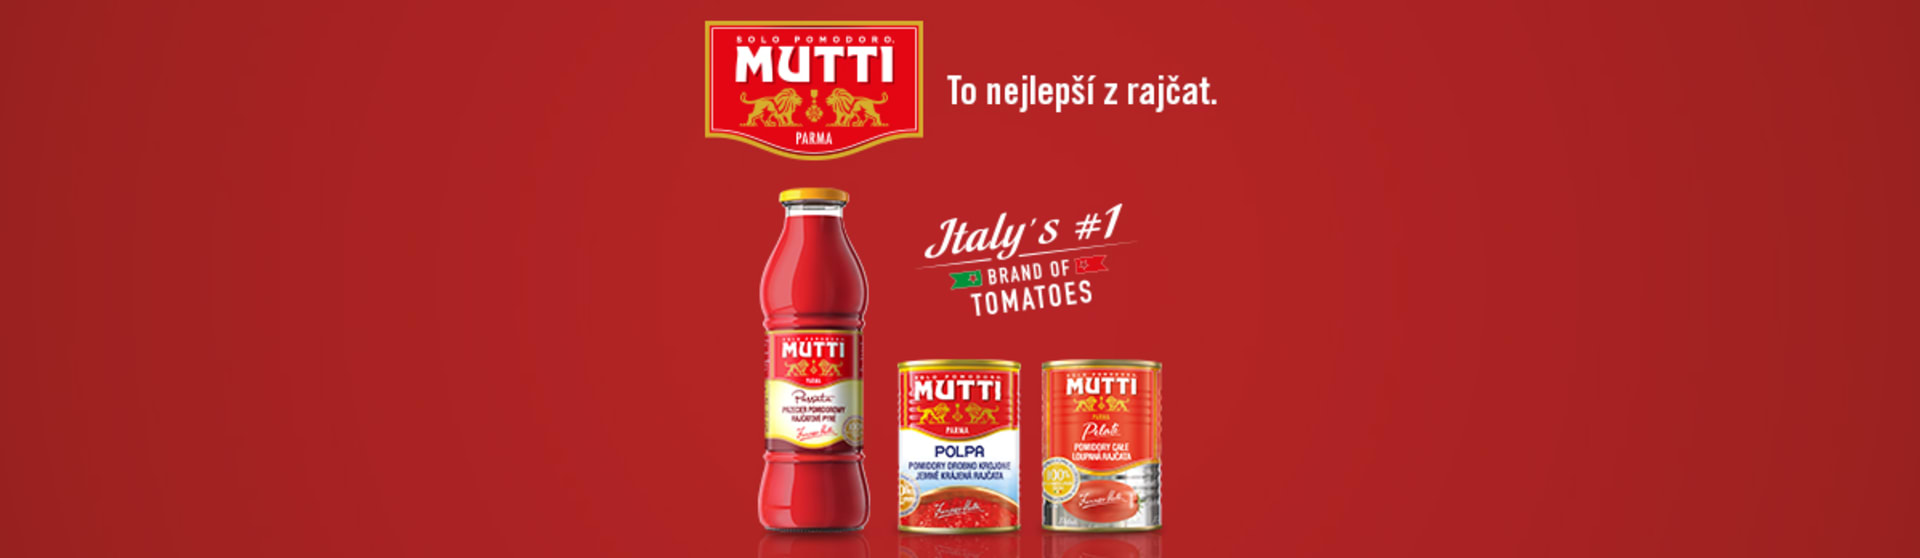 Mutti – To nejlepší z rajčat!